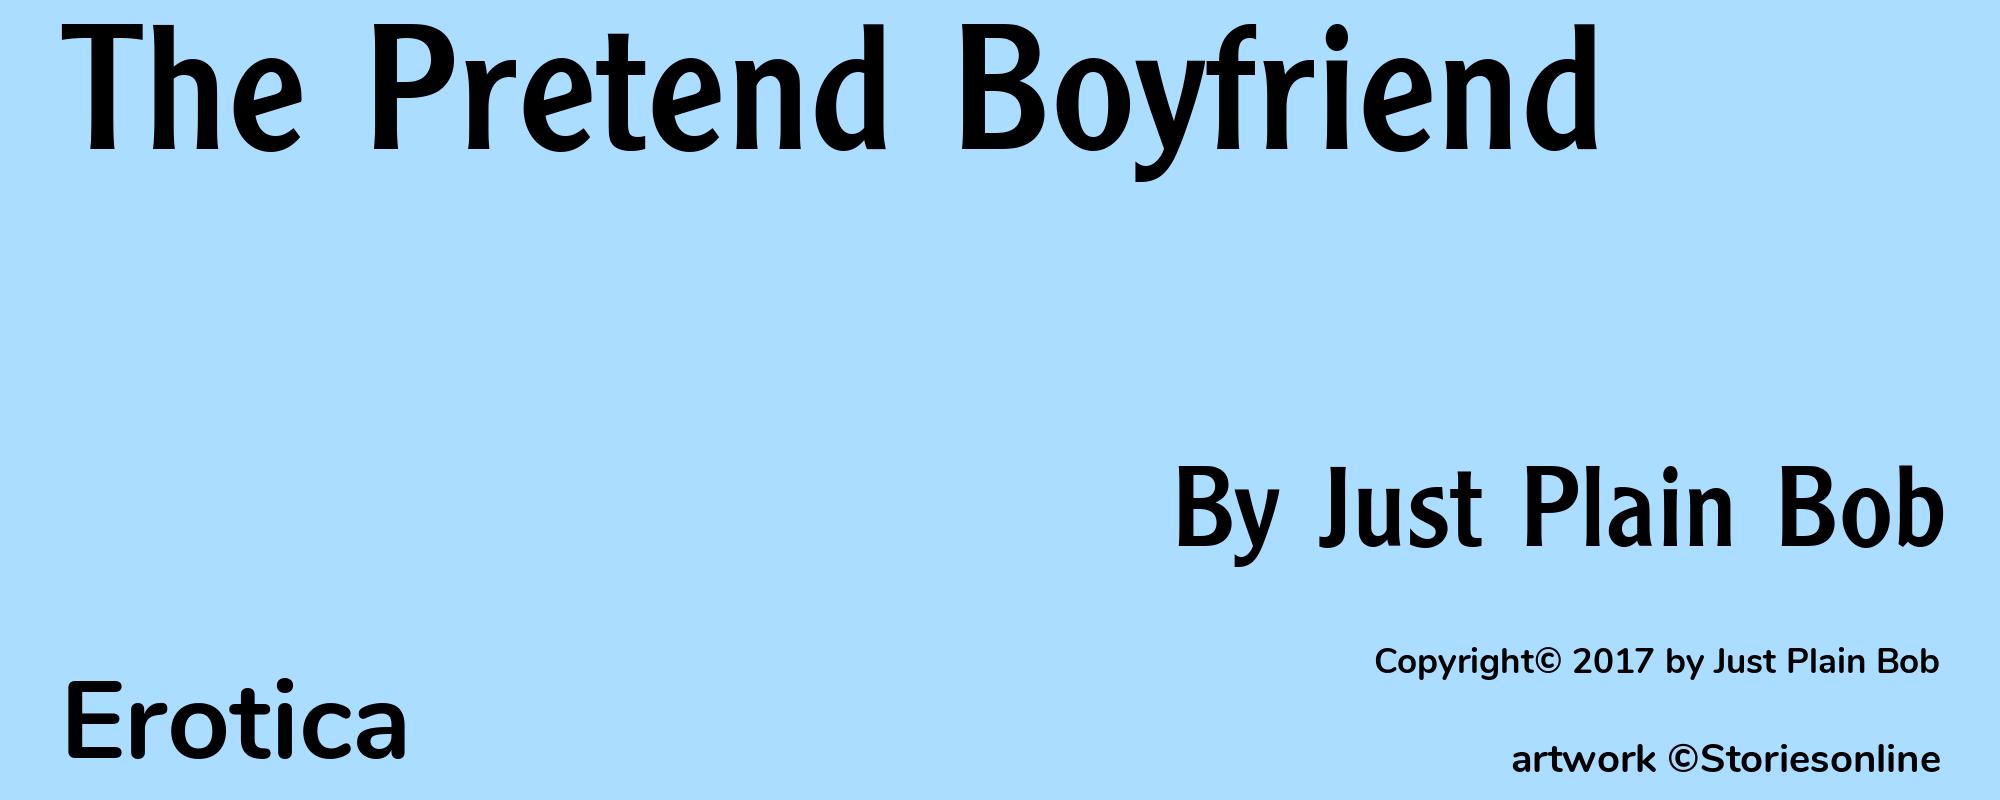 The Pretend Boyfriend - Cover